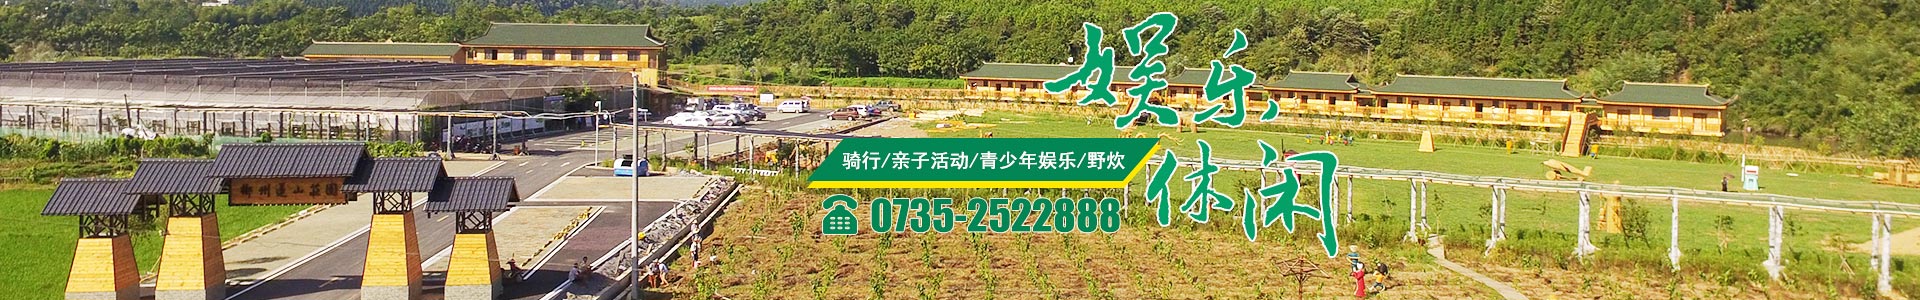 郴州华汉栖河生态农业有限公司|湖南生态山庄|郴州生态山庄